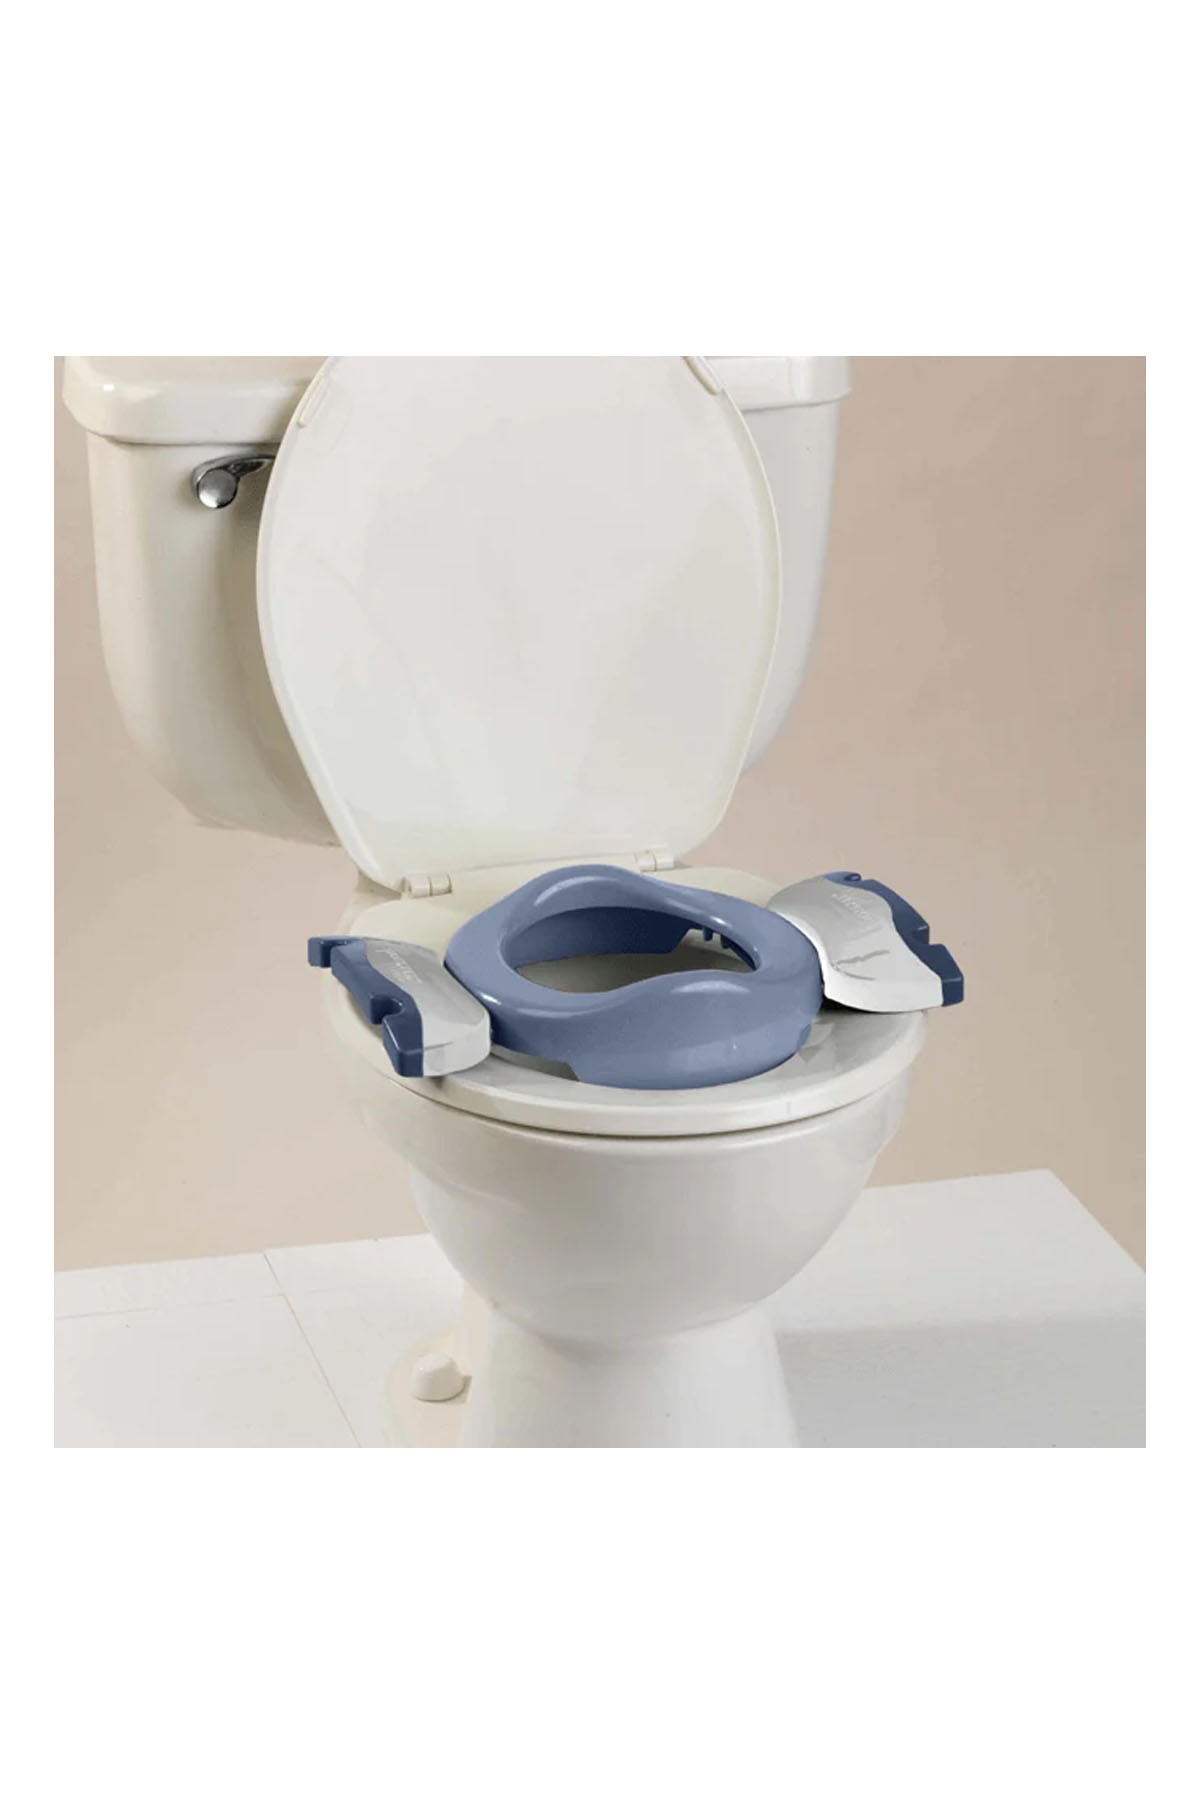 Potette Plus Portatif Lazımlık Eğitici Oturak Tuvalet Adaptörü Mavi